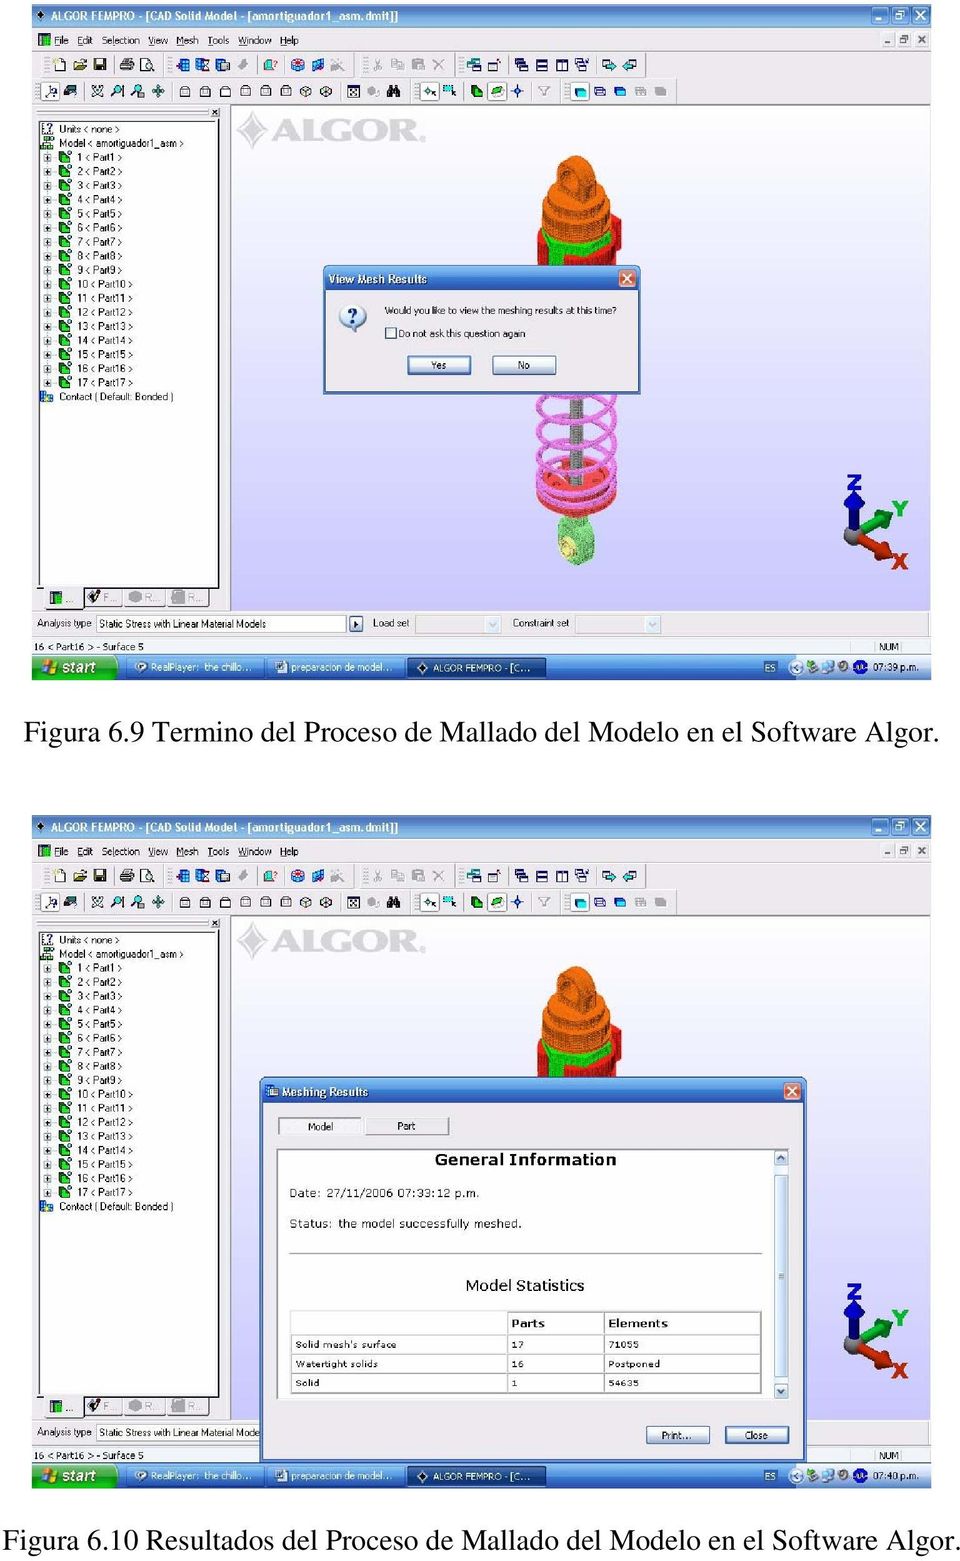 Modelo en el Software Algor.